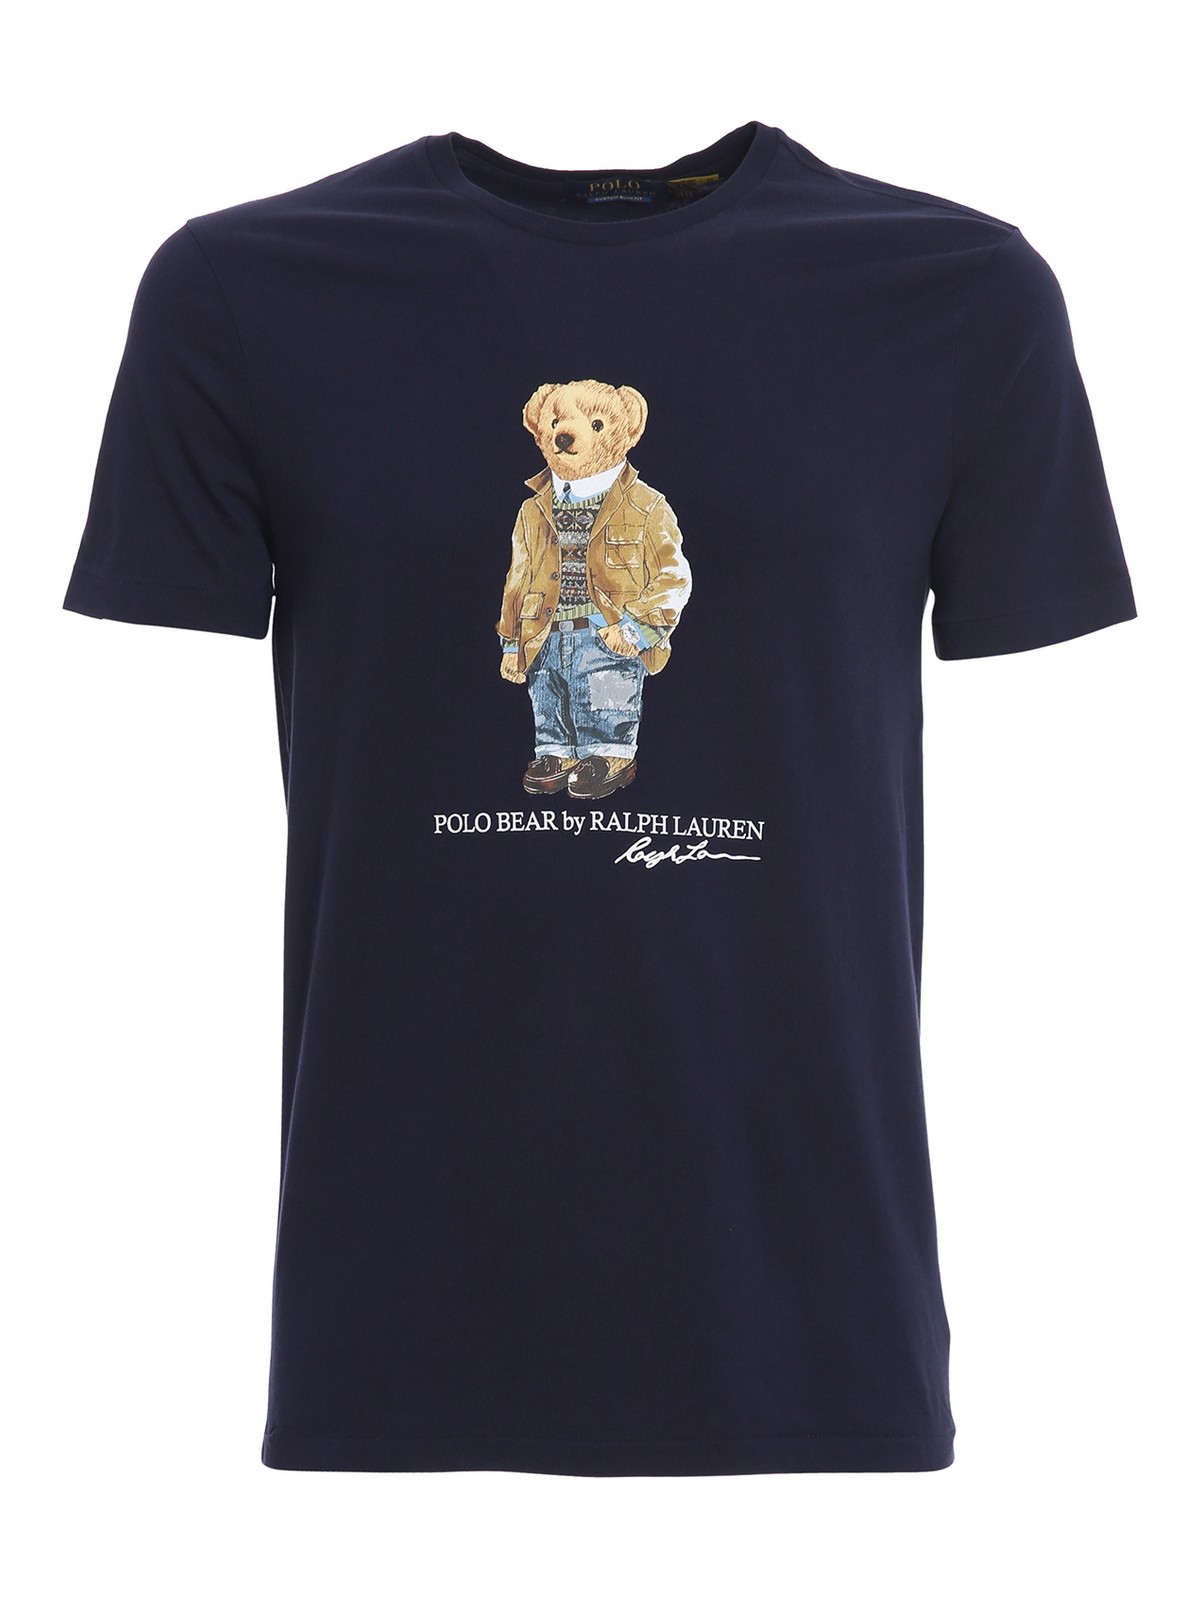 Camisetas Polo Ralph Lauren - Camiseta - Polo Bear - 710835761001